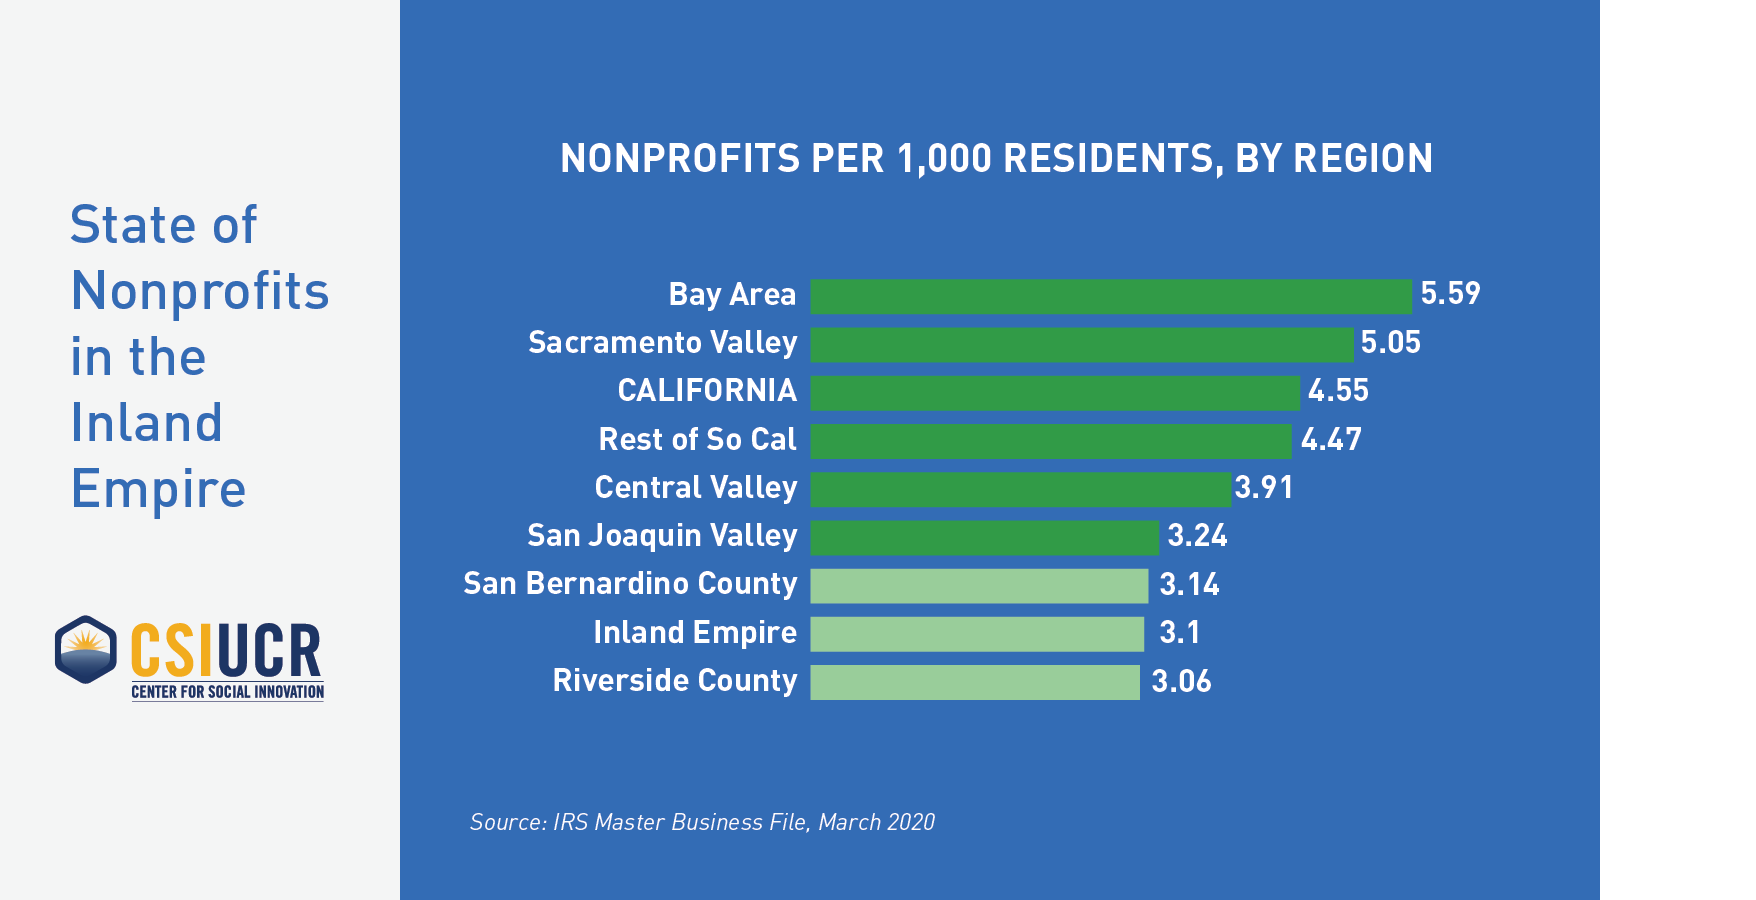 Nonprofits per 1,000 Residents